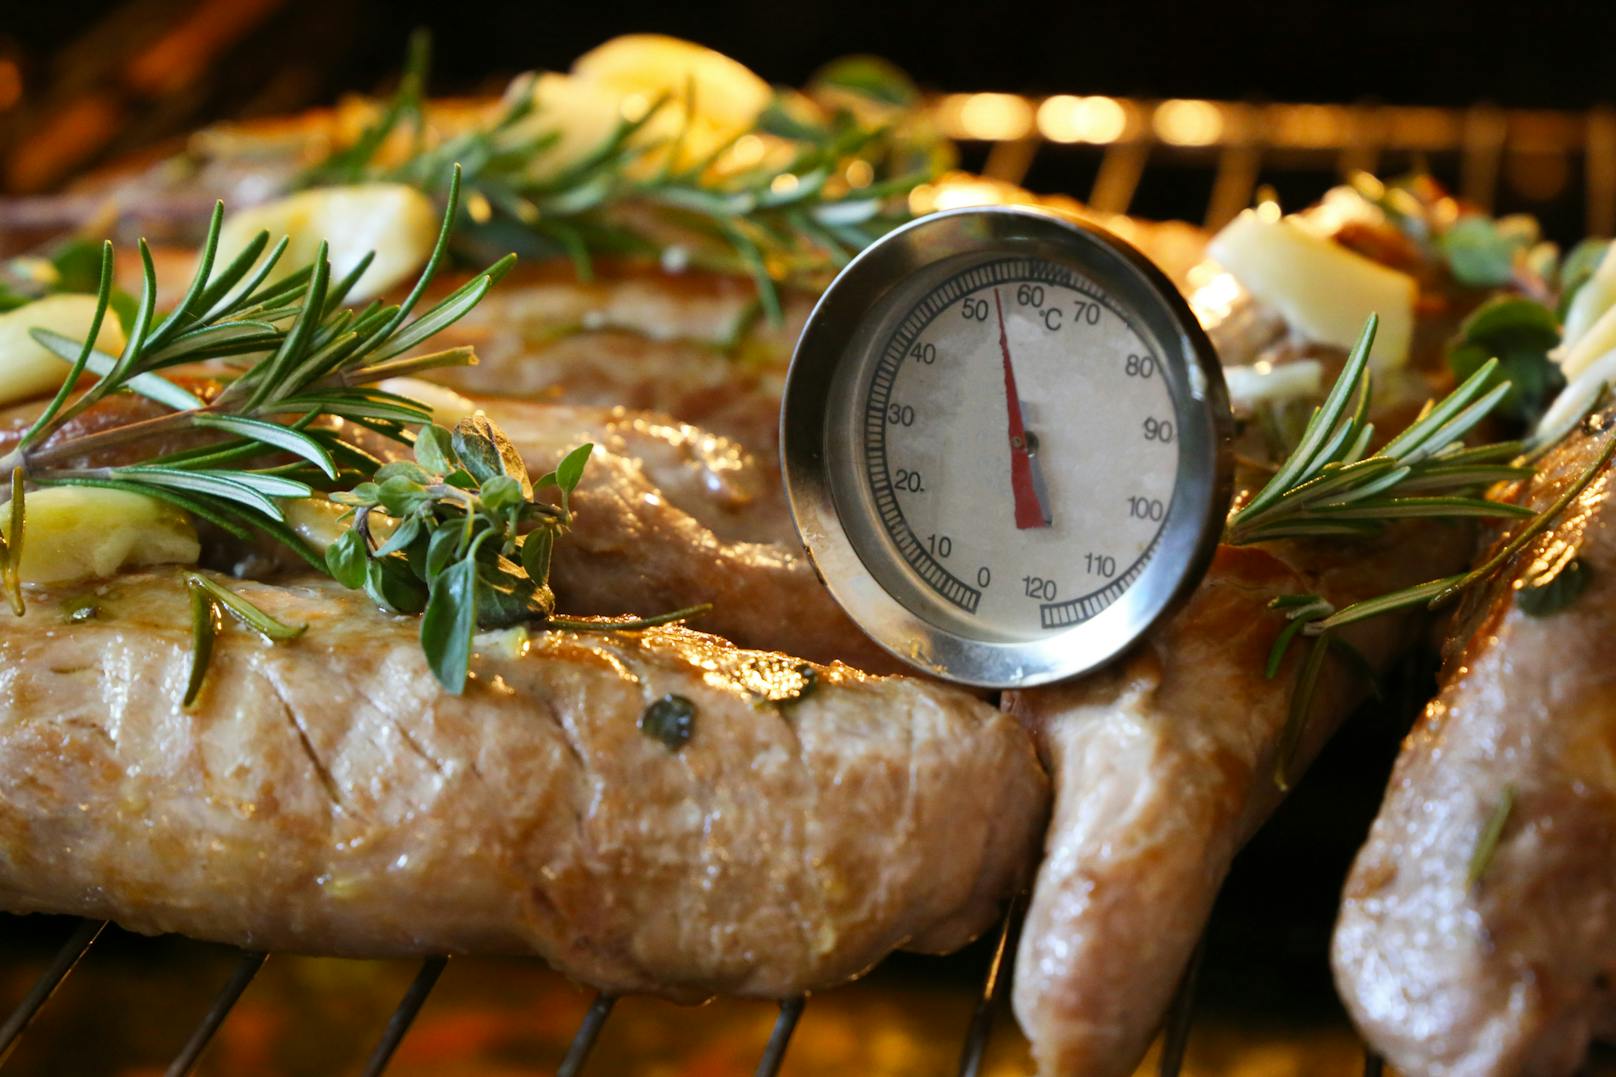 Für Fleisch empfiehlt sich ein spezielles Thermometer, um mindestens eine Temperatur von 75 Grad sicherzustellen.